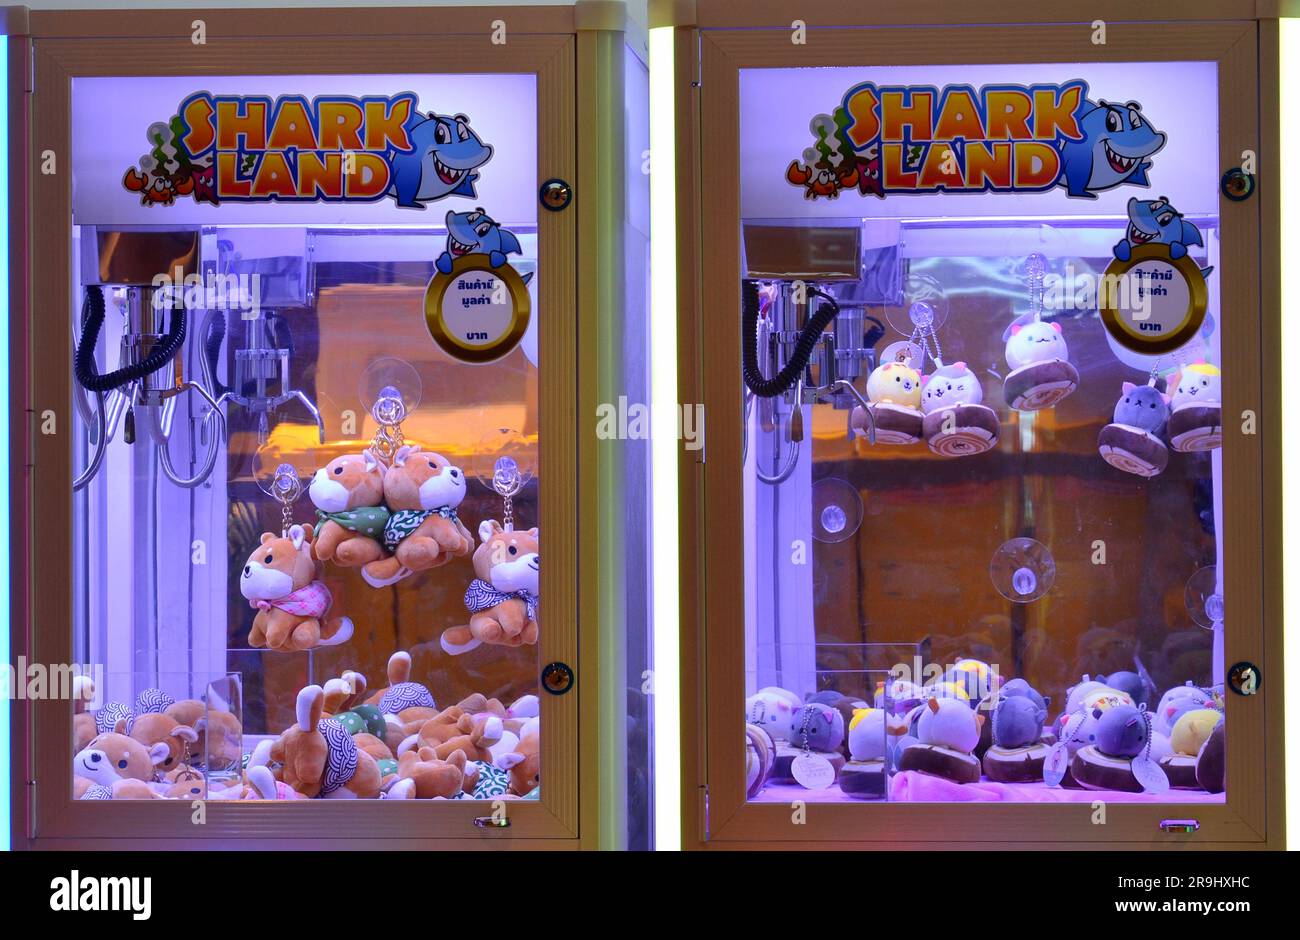 Ein Spielautomat in einem Einkaufszentrum in Bangkok, Thailand, lädt die Menschen ein, Münzen einzustecken, um mit dem Kran oder Greifer ein kuscheliges oder weiches Spielzeug zu gewinnen. Die Maschine trägt den Namen „Shark Land“, was bedeutet, dass Herausforderungen vor uns liegen, bevor man ein Spielzeug gewinnt. Stockfoto